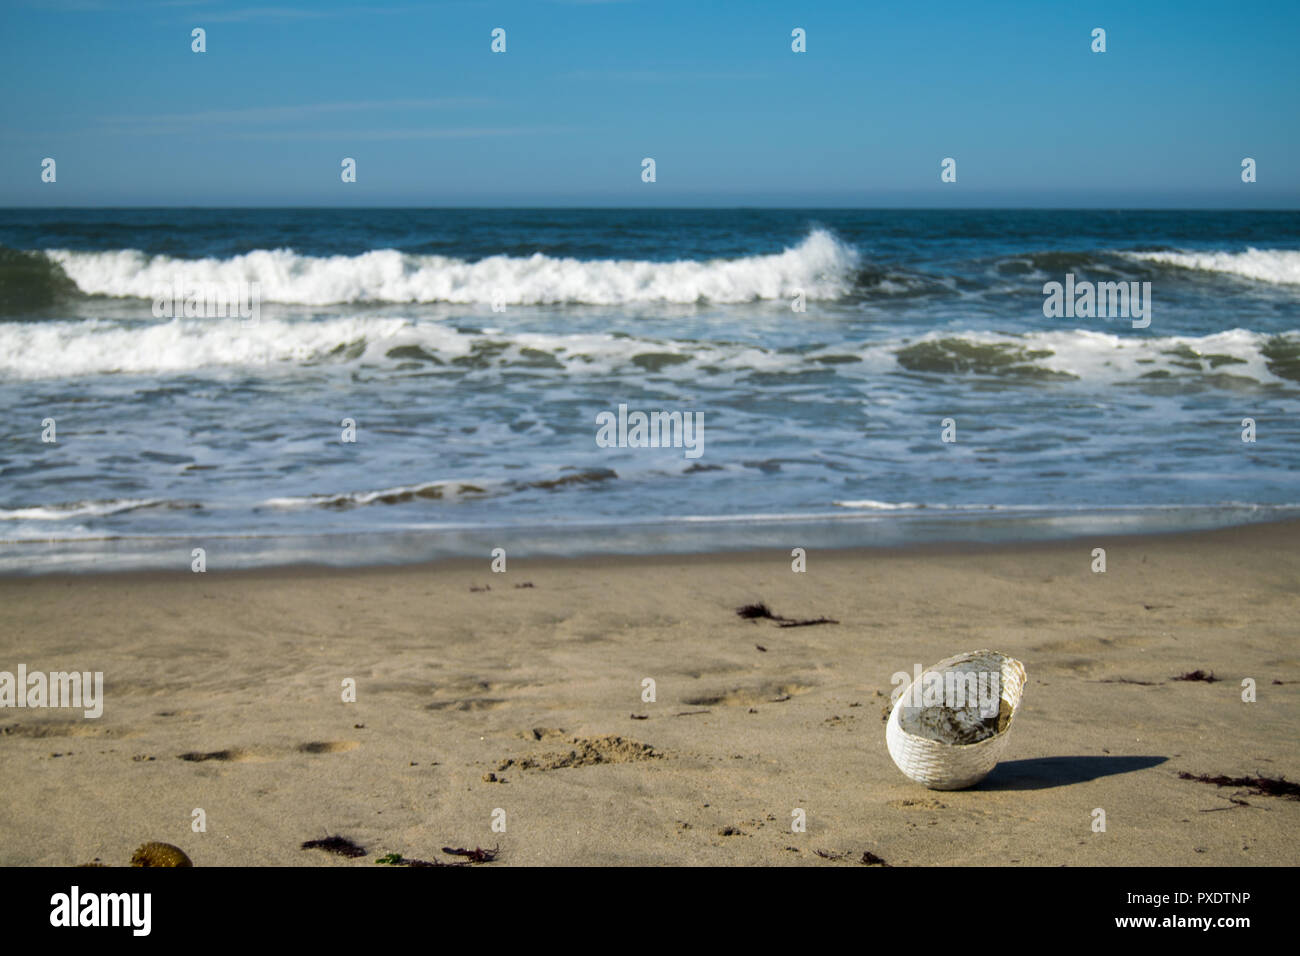 Ofir plage au Portugal, surf spot. Problème de pollution sur les plages par l'utilisation de plastiques et la mauvaise élimination. Banque D'Images